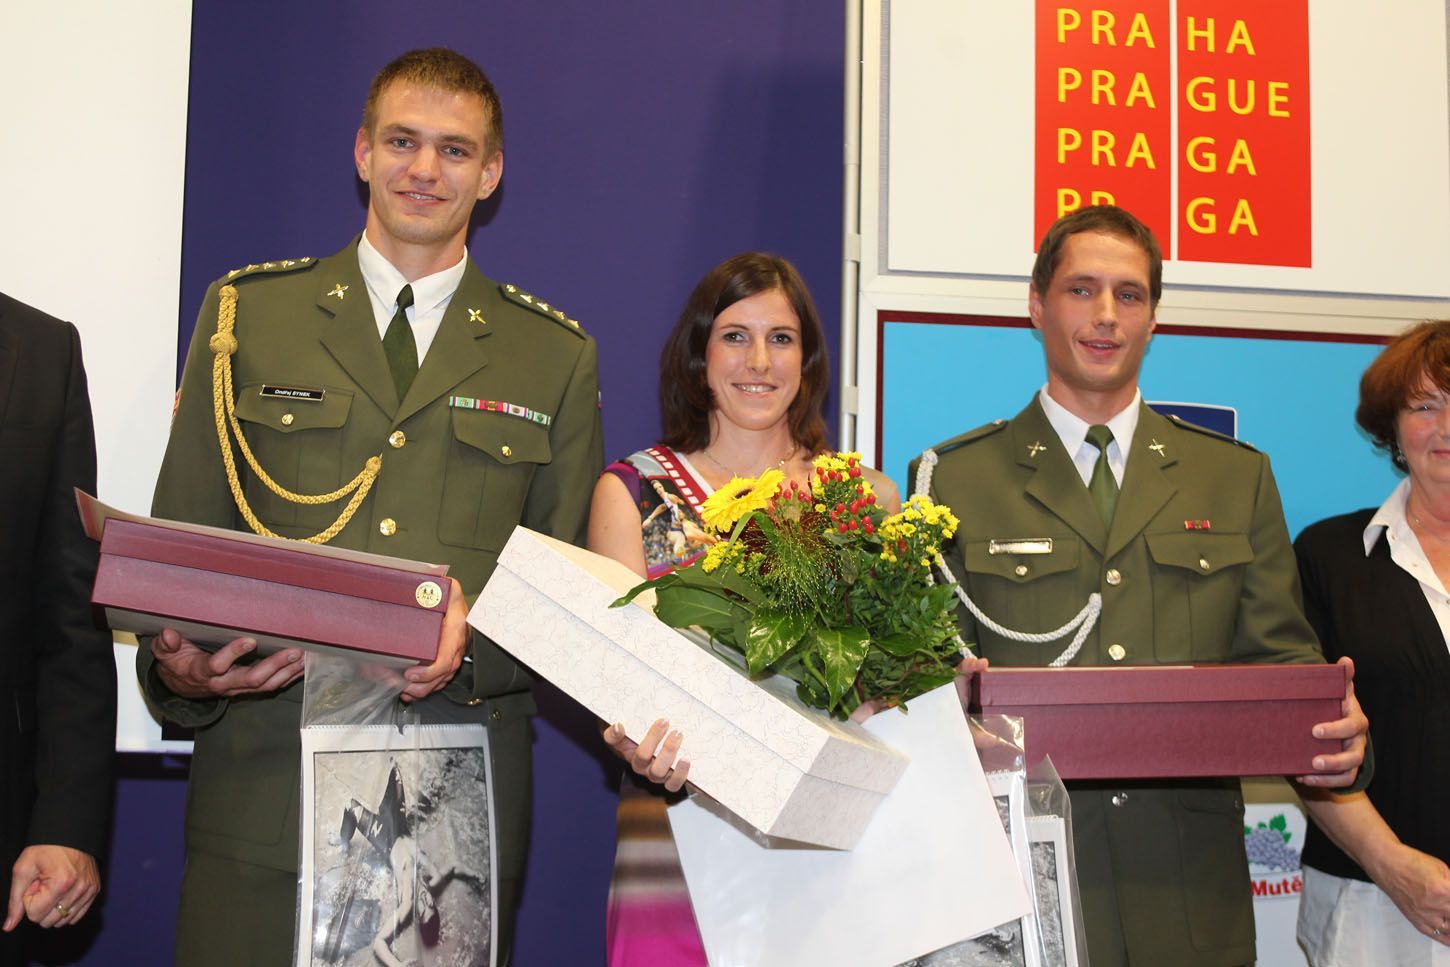 Vyhlášení armádního sportovce roku 2013: Synek, Hejnová, Veselý